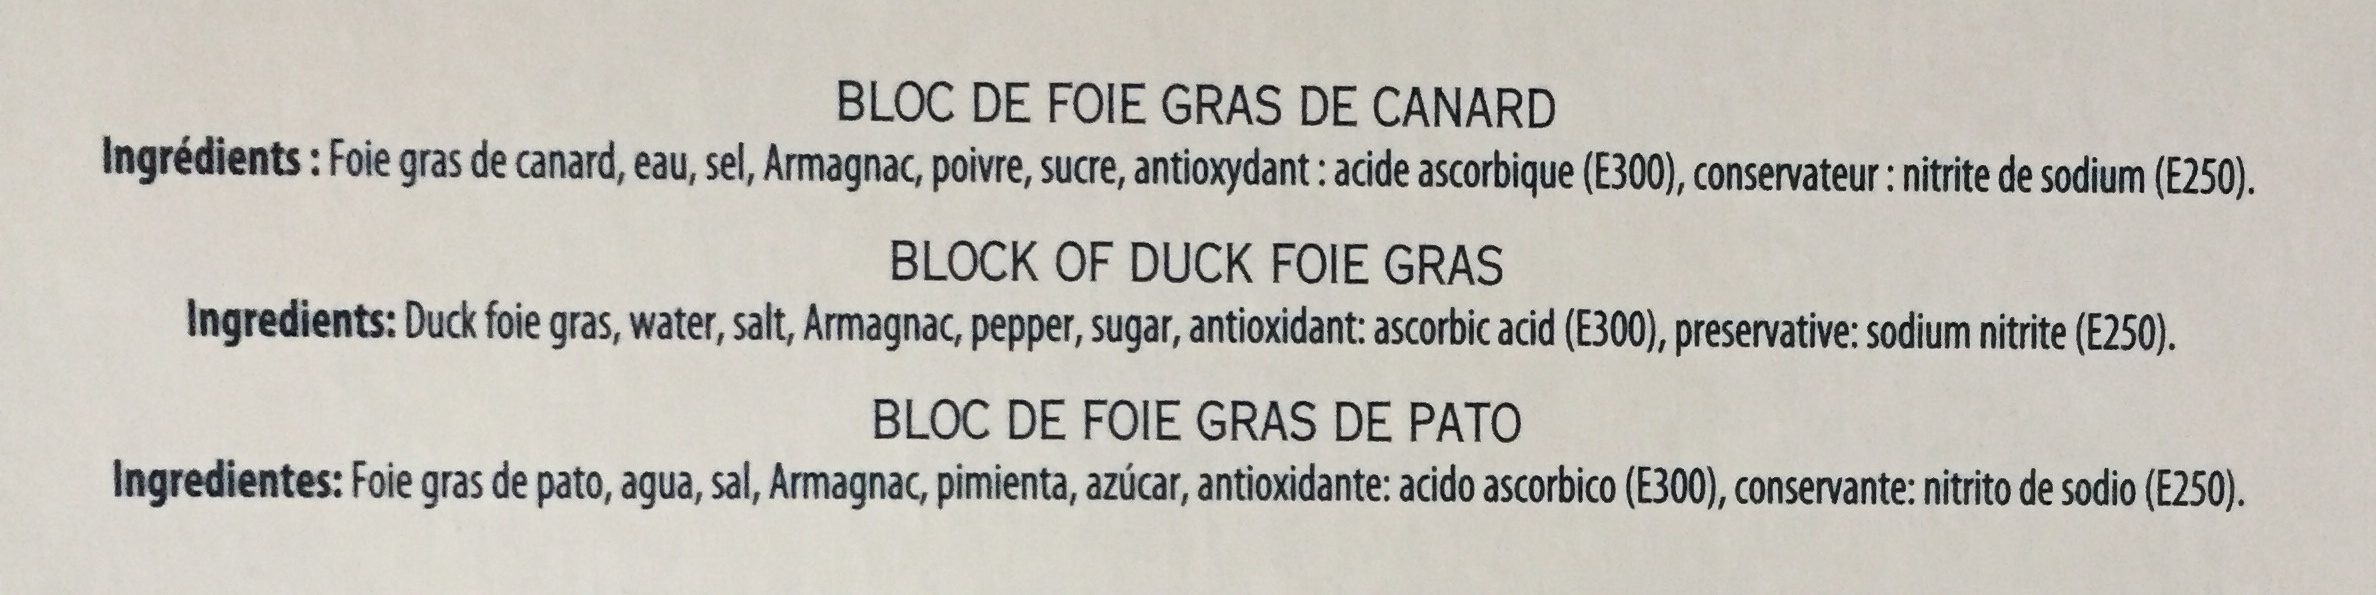 Bloc de foie gras de canard mi-cuit - Ingredients - fr